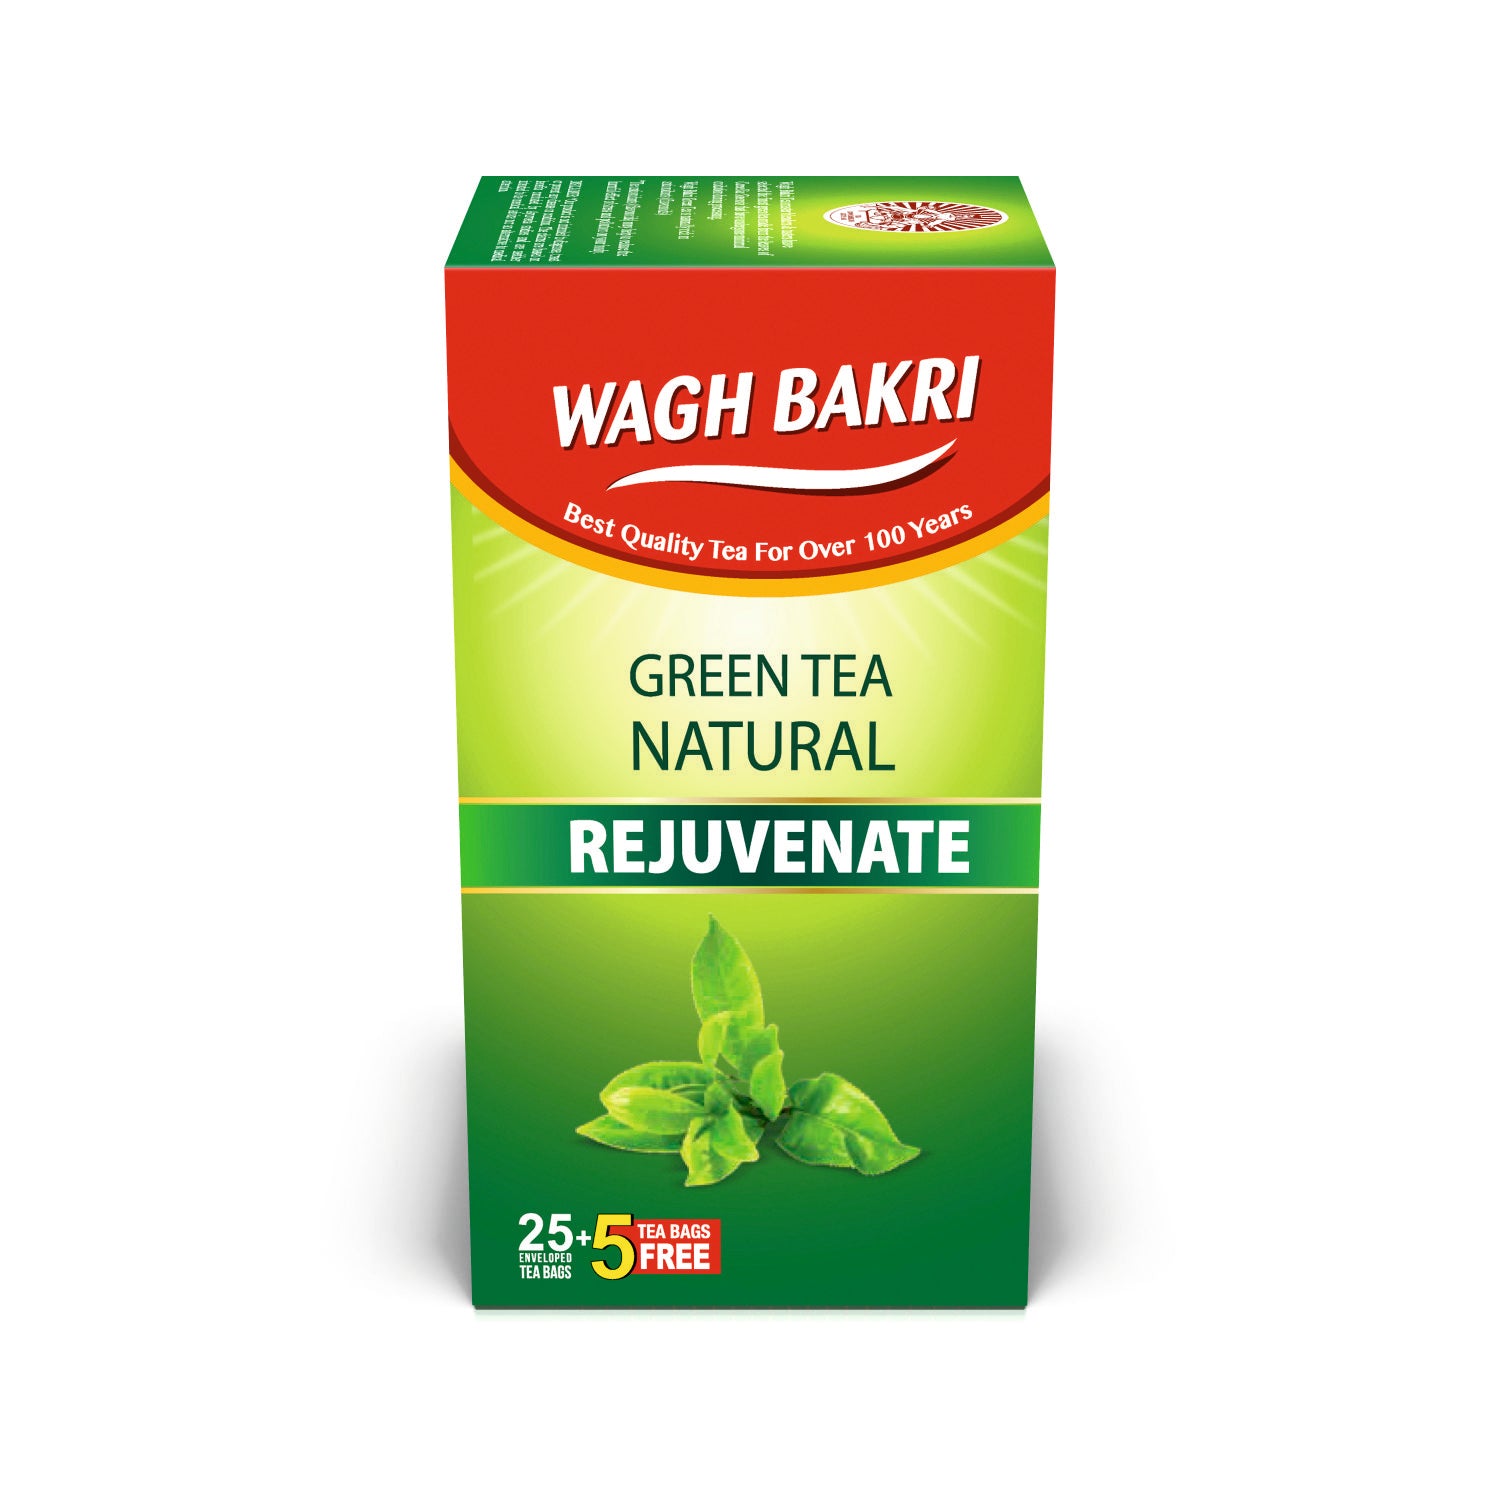 Wagh Bakri Natural Green Tea Bags